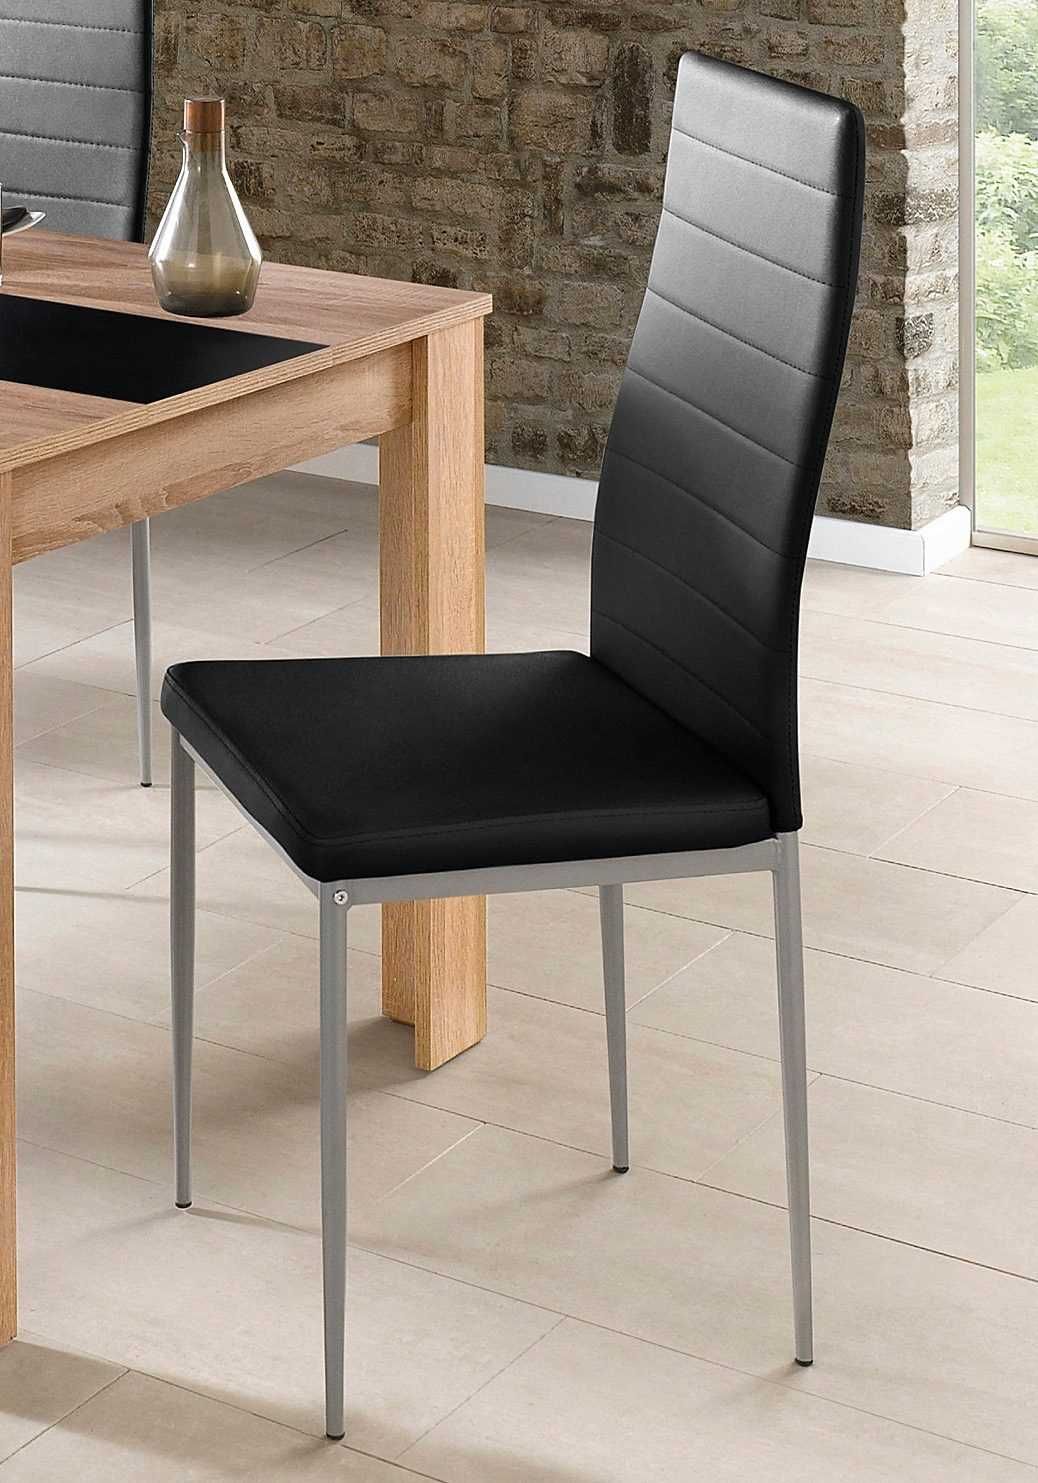 Salon / jadalnia * Nowy zestaw stół + 4 krzesła * 700zł